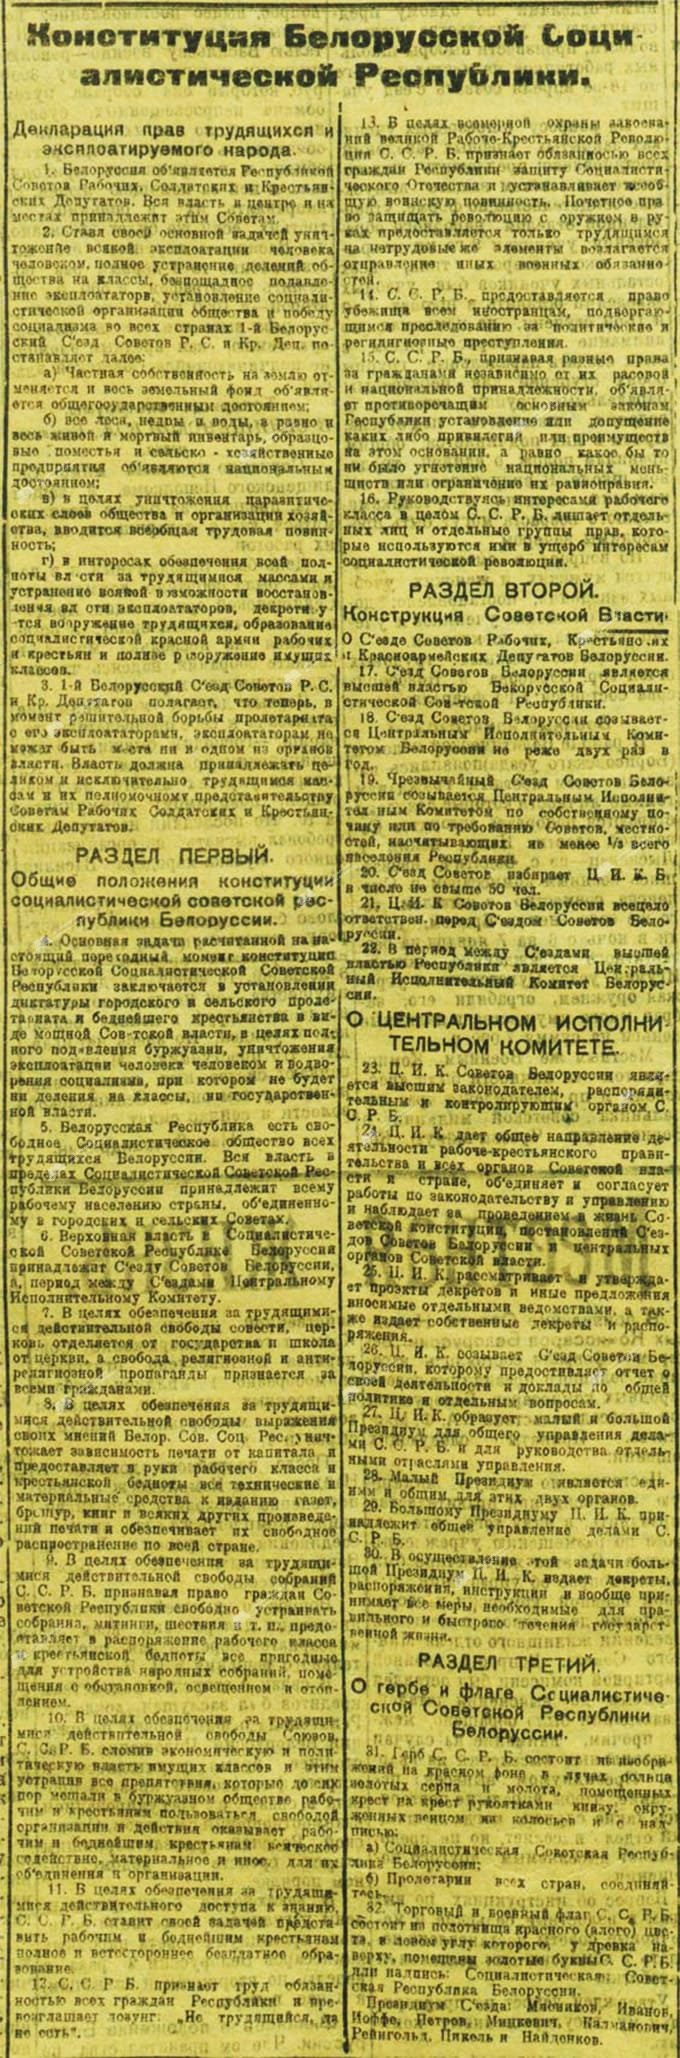 Конституция Белорусской Социалистической Республики (ССРБ) 3 февраля 1919 г.-с. 0